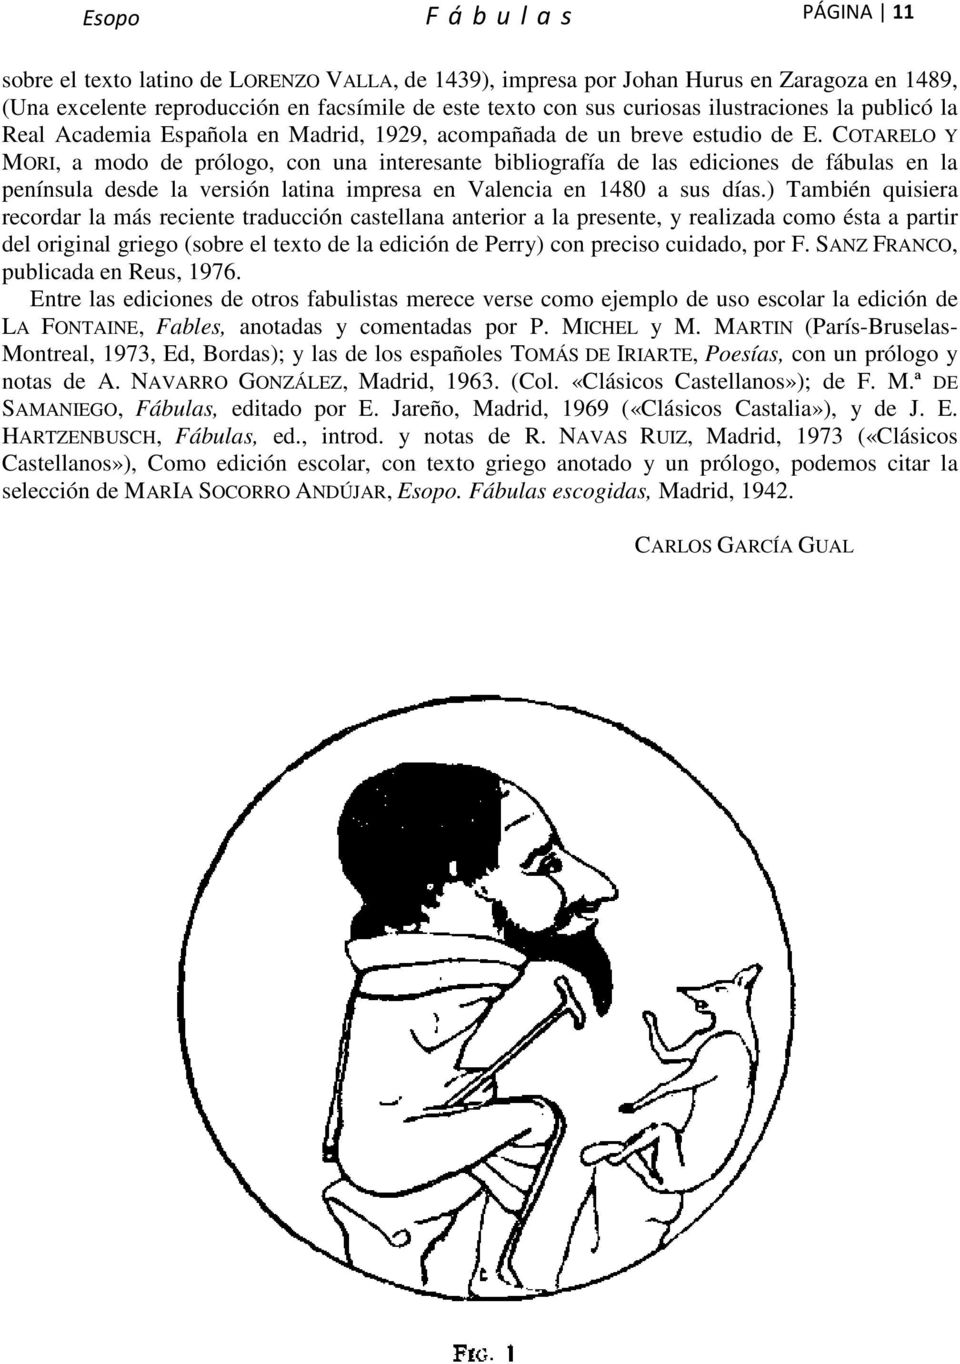 COTARELO Y MORI, a modo de prólogo, con una interesante bibliografía de las ediciones de fábulas en la península desde la versión latina impresa en Valencia en 1480 a sus días.